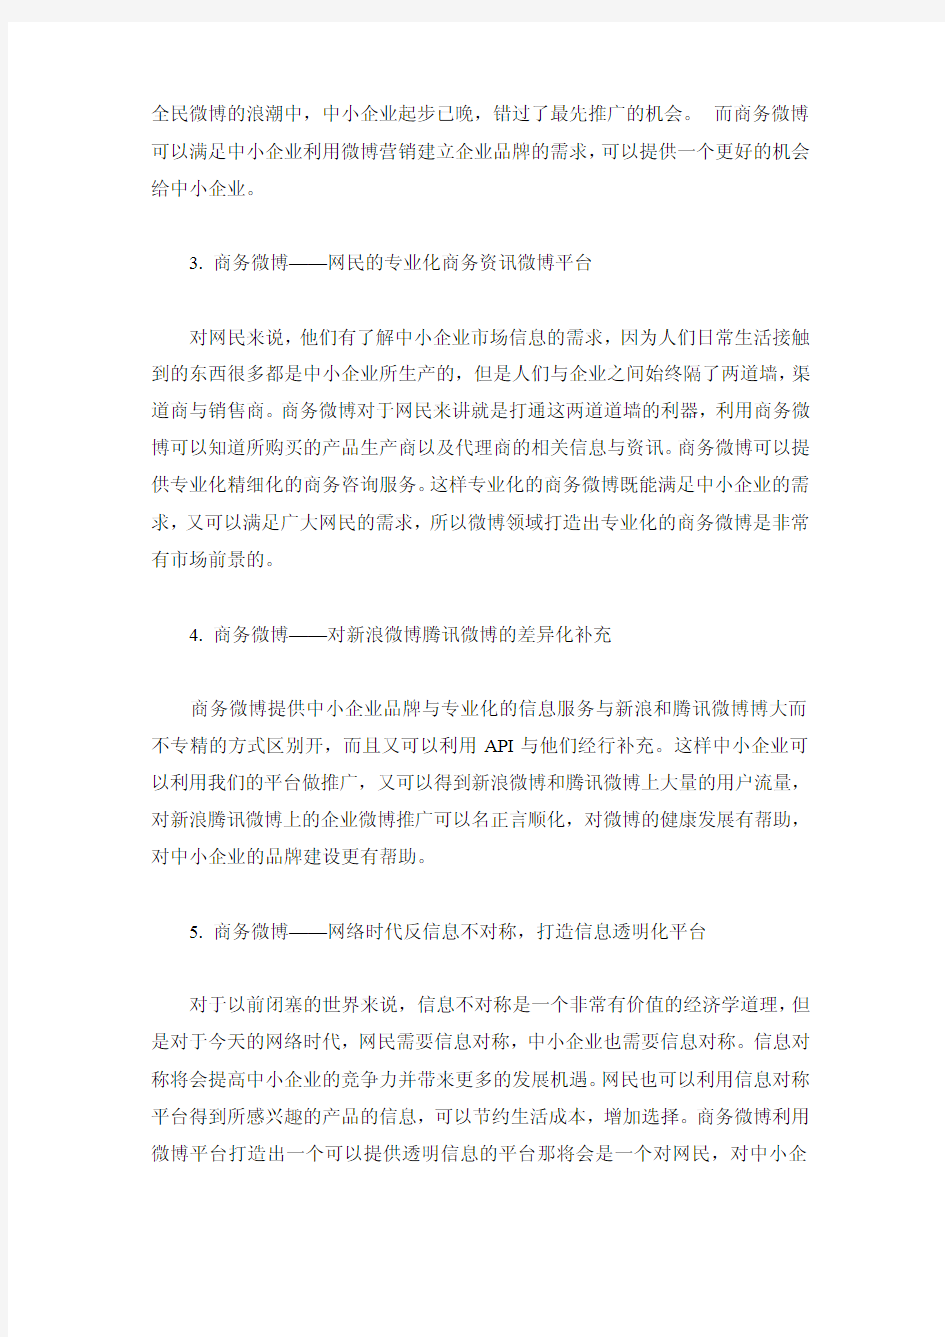 上海笑开网络科技有限公司浅谈商务微博细分市场定位